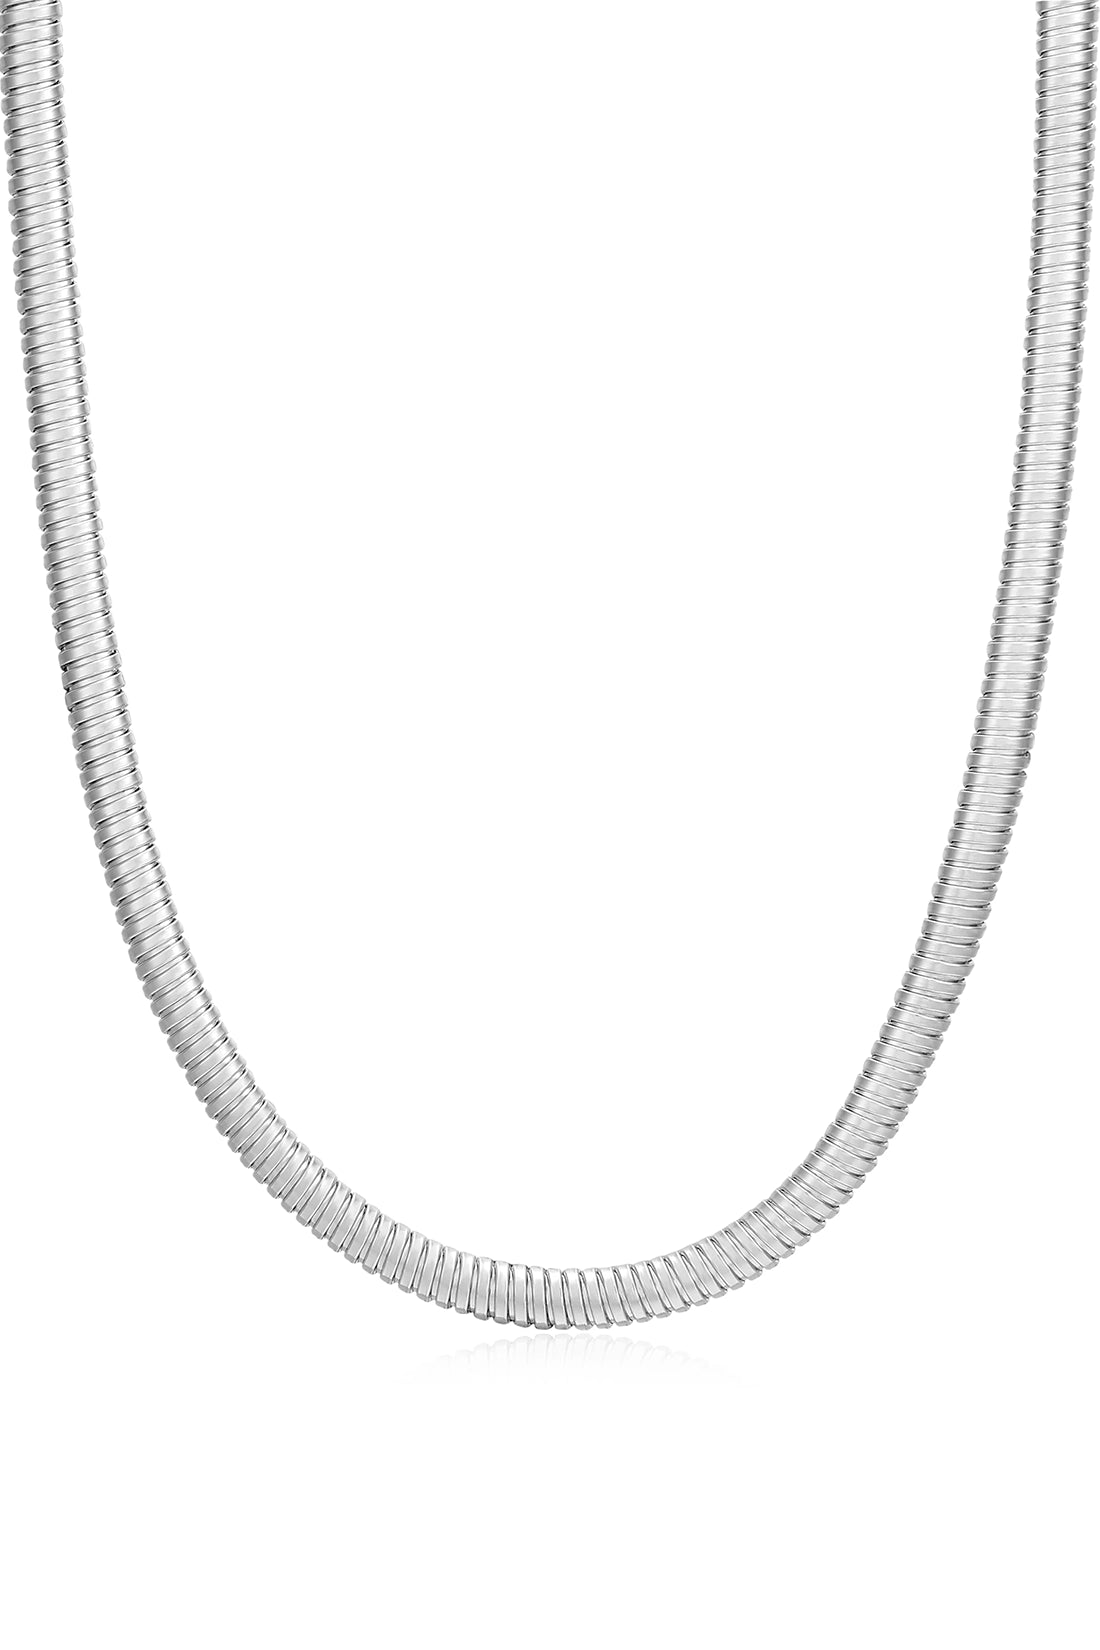 Mini Flex Snake Chain Necklace- Silver